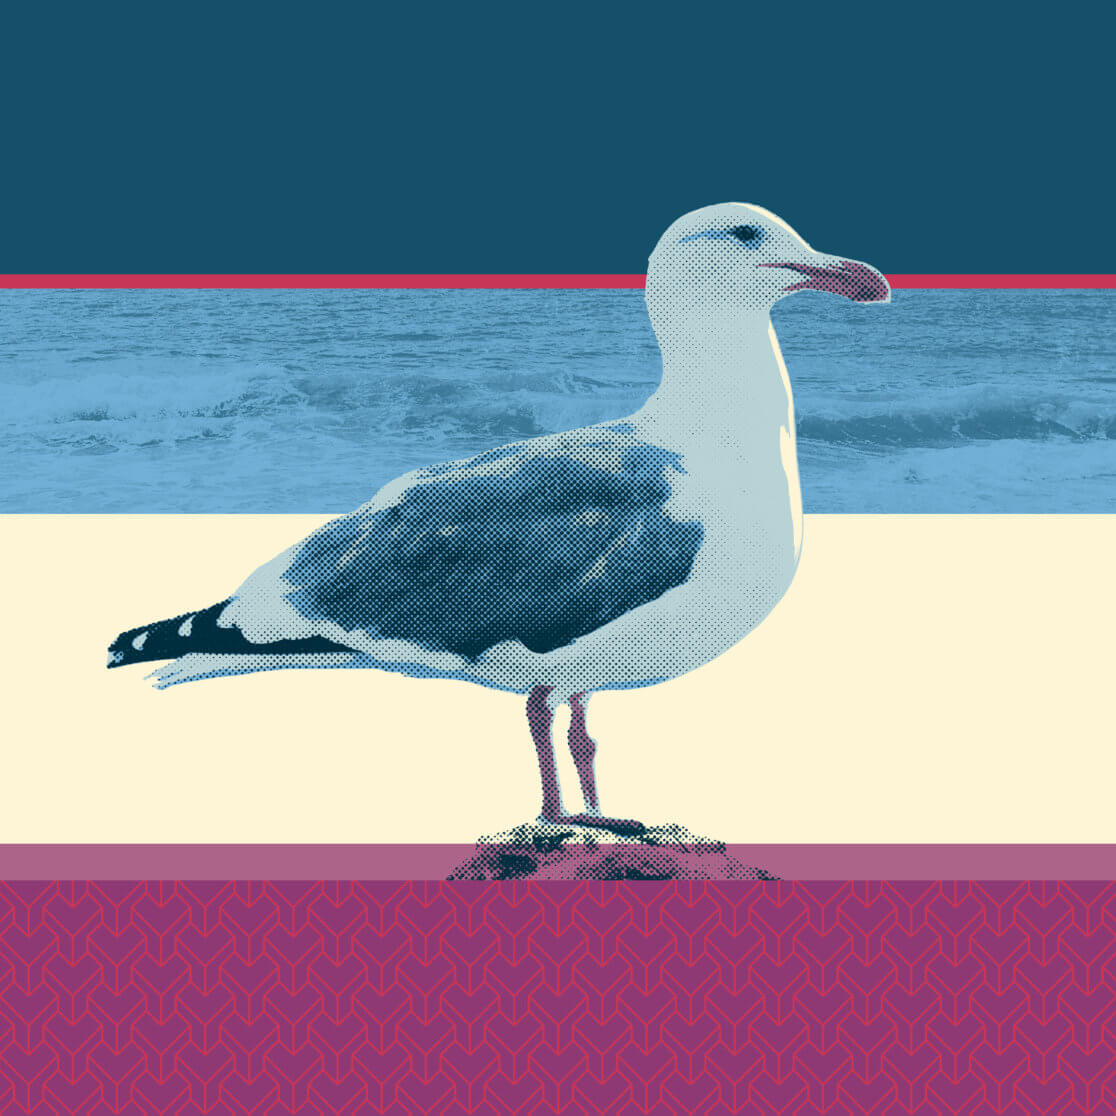 Matthias Maier | Birds of Fire Island | Seagull